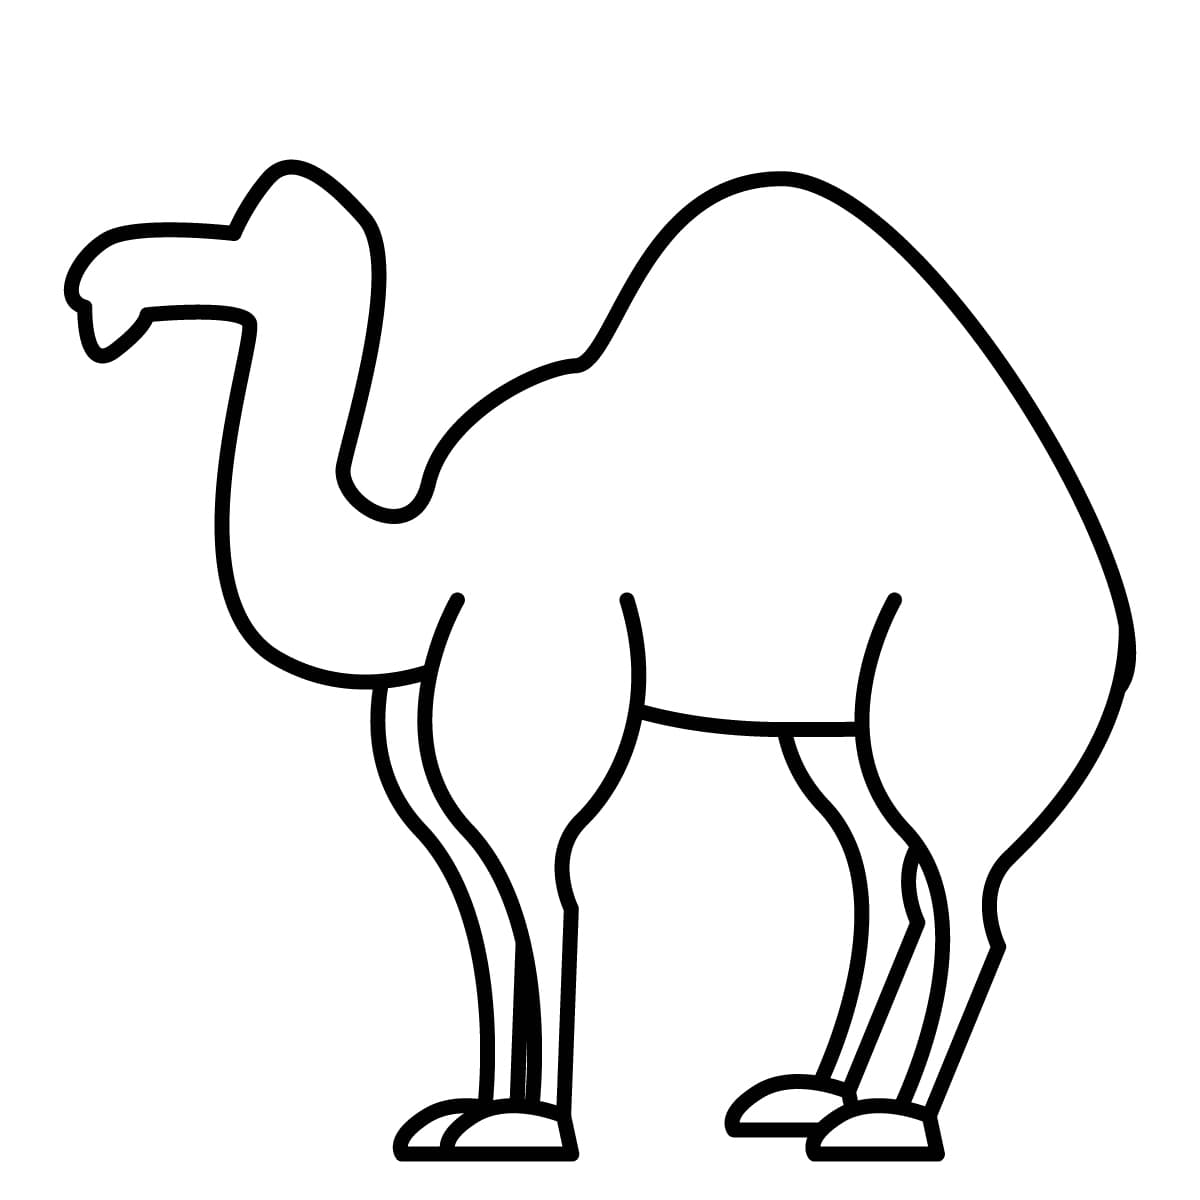 Dibujo de camello para colorear e imprimir - Dibujos y colores